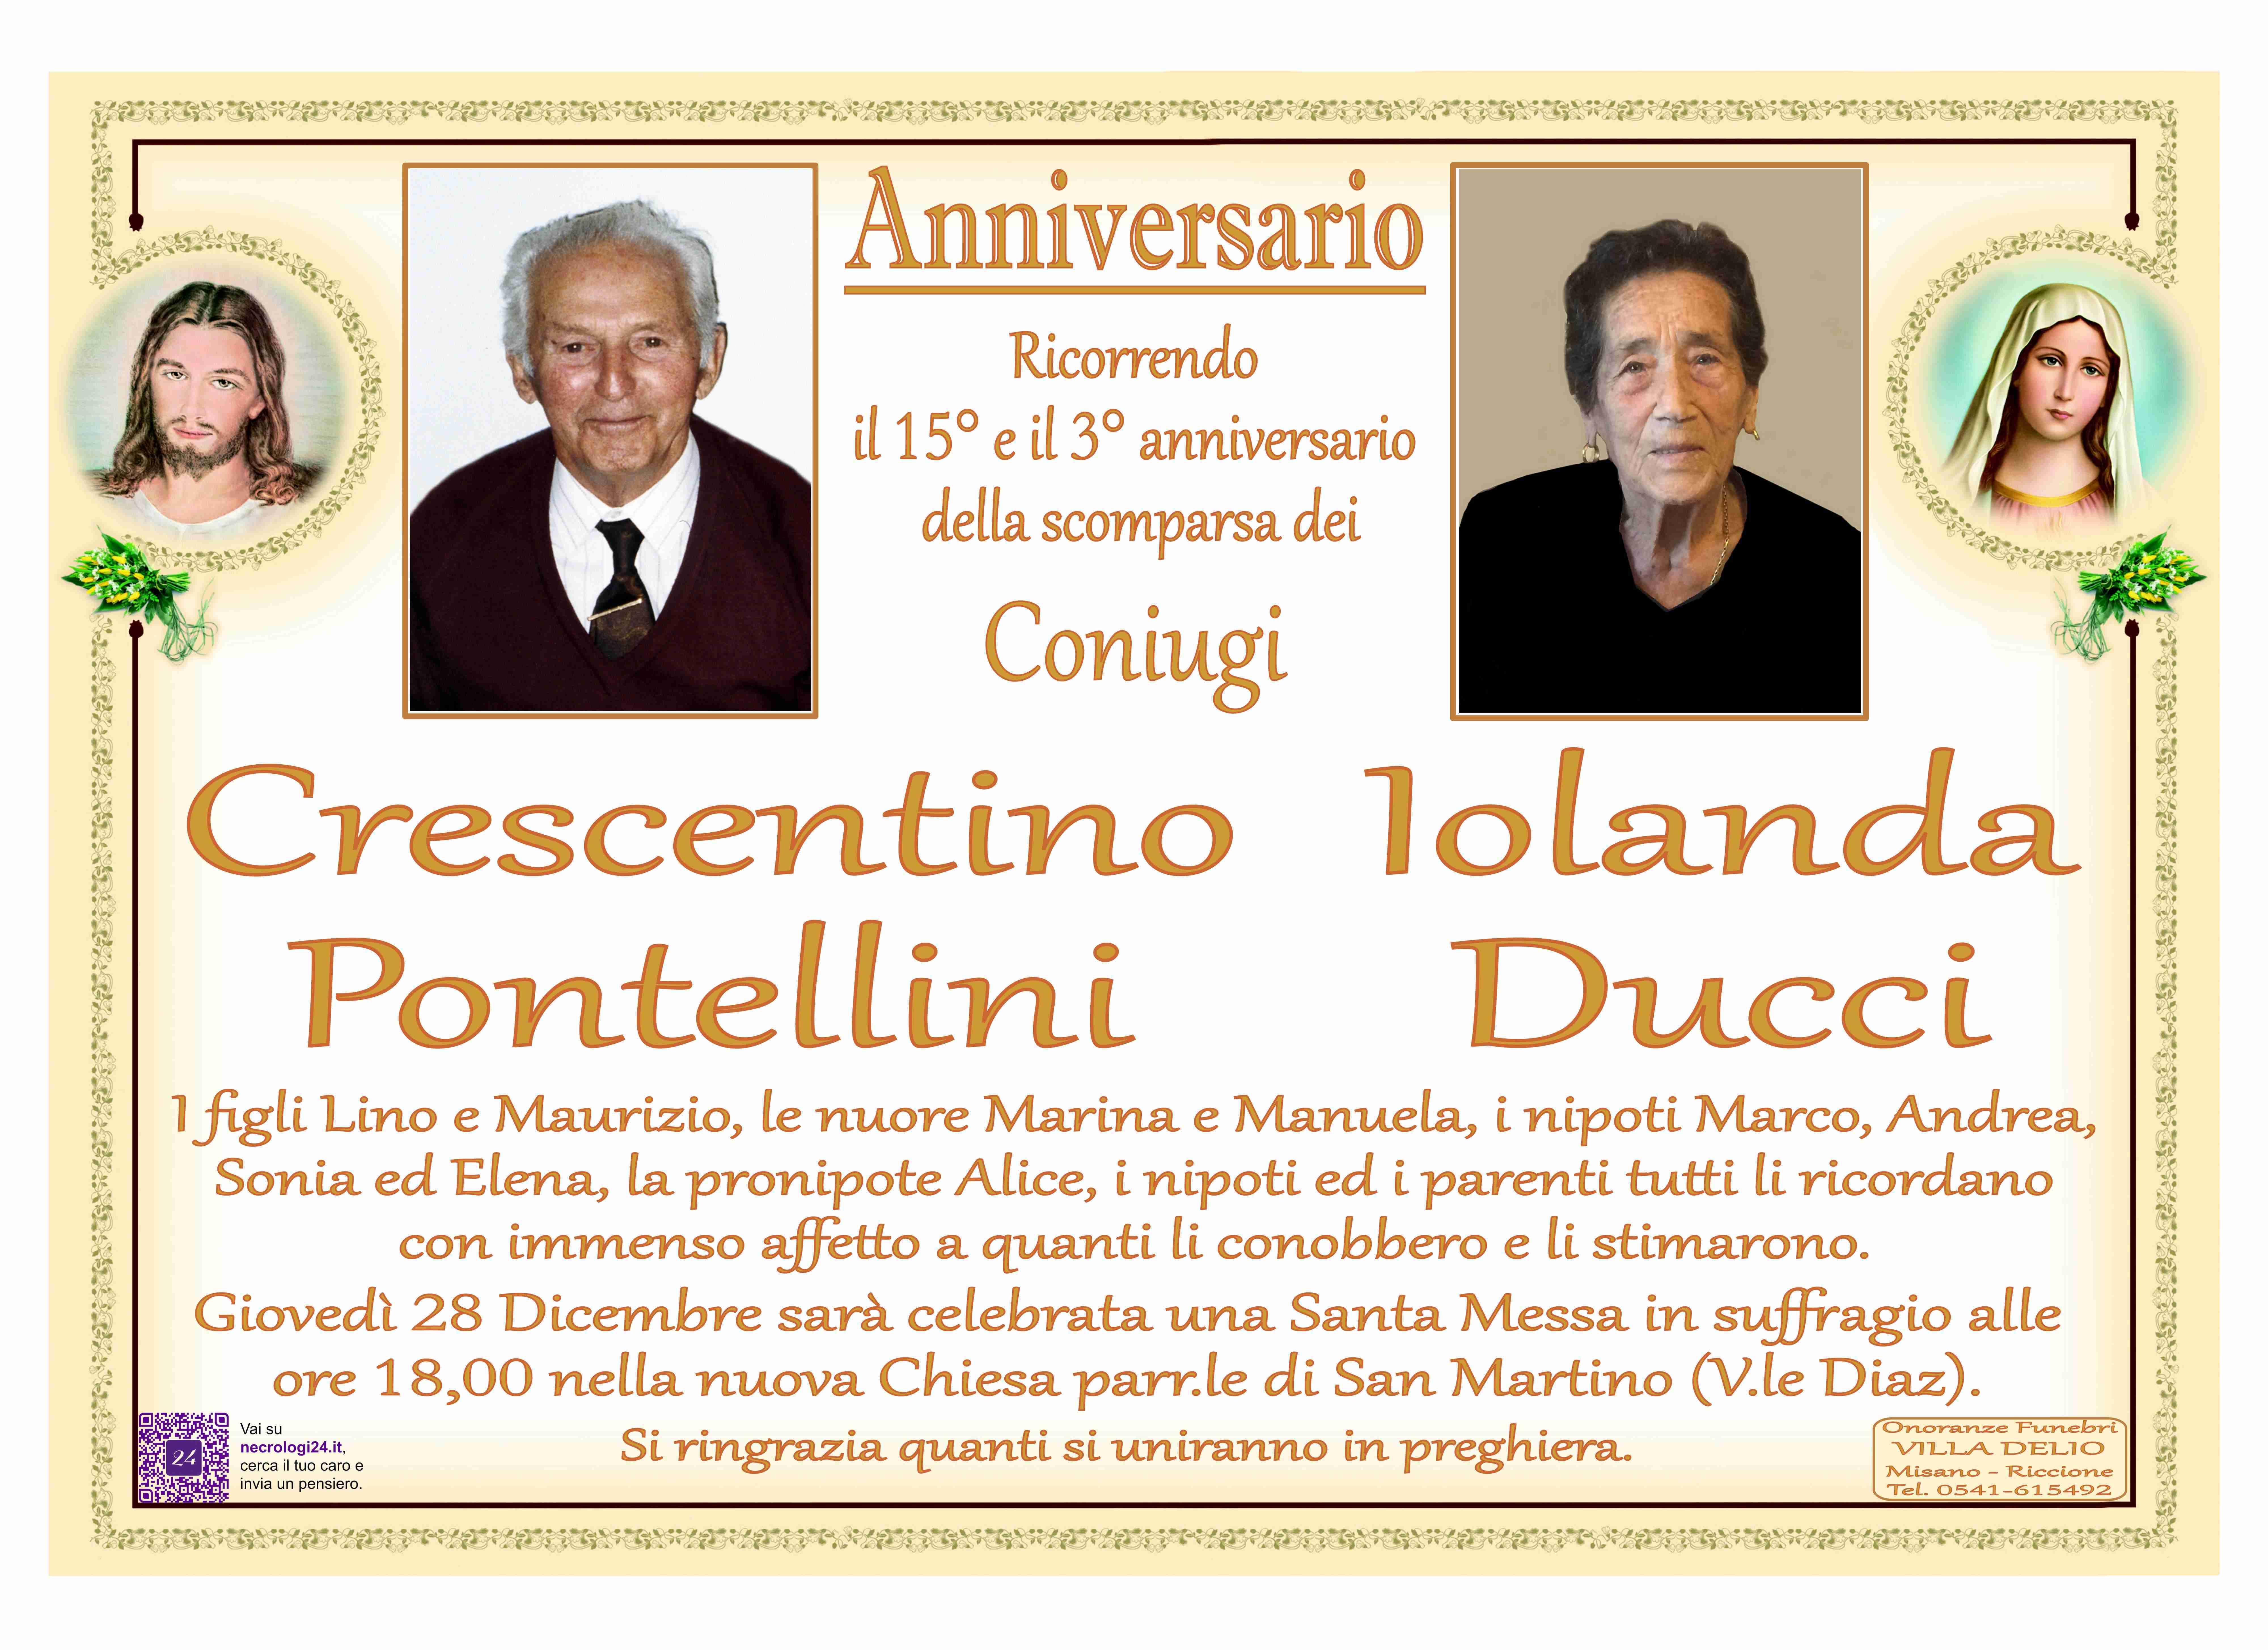 Crescentino Pontellini e Iolanda Ducci